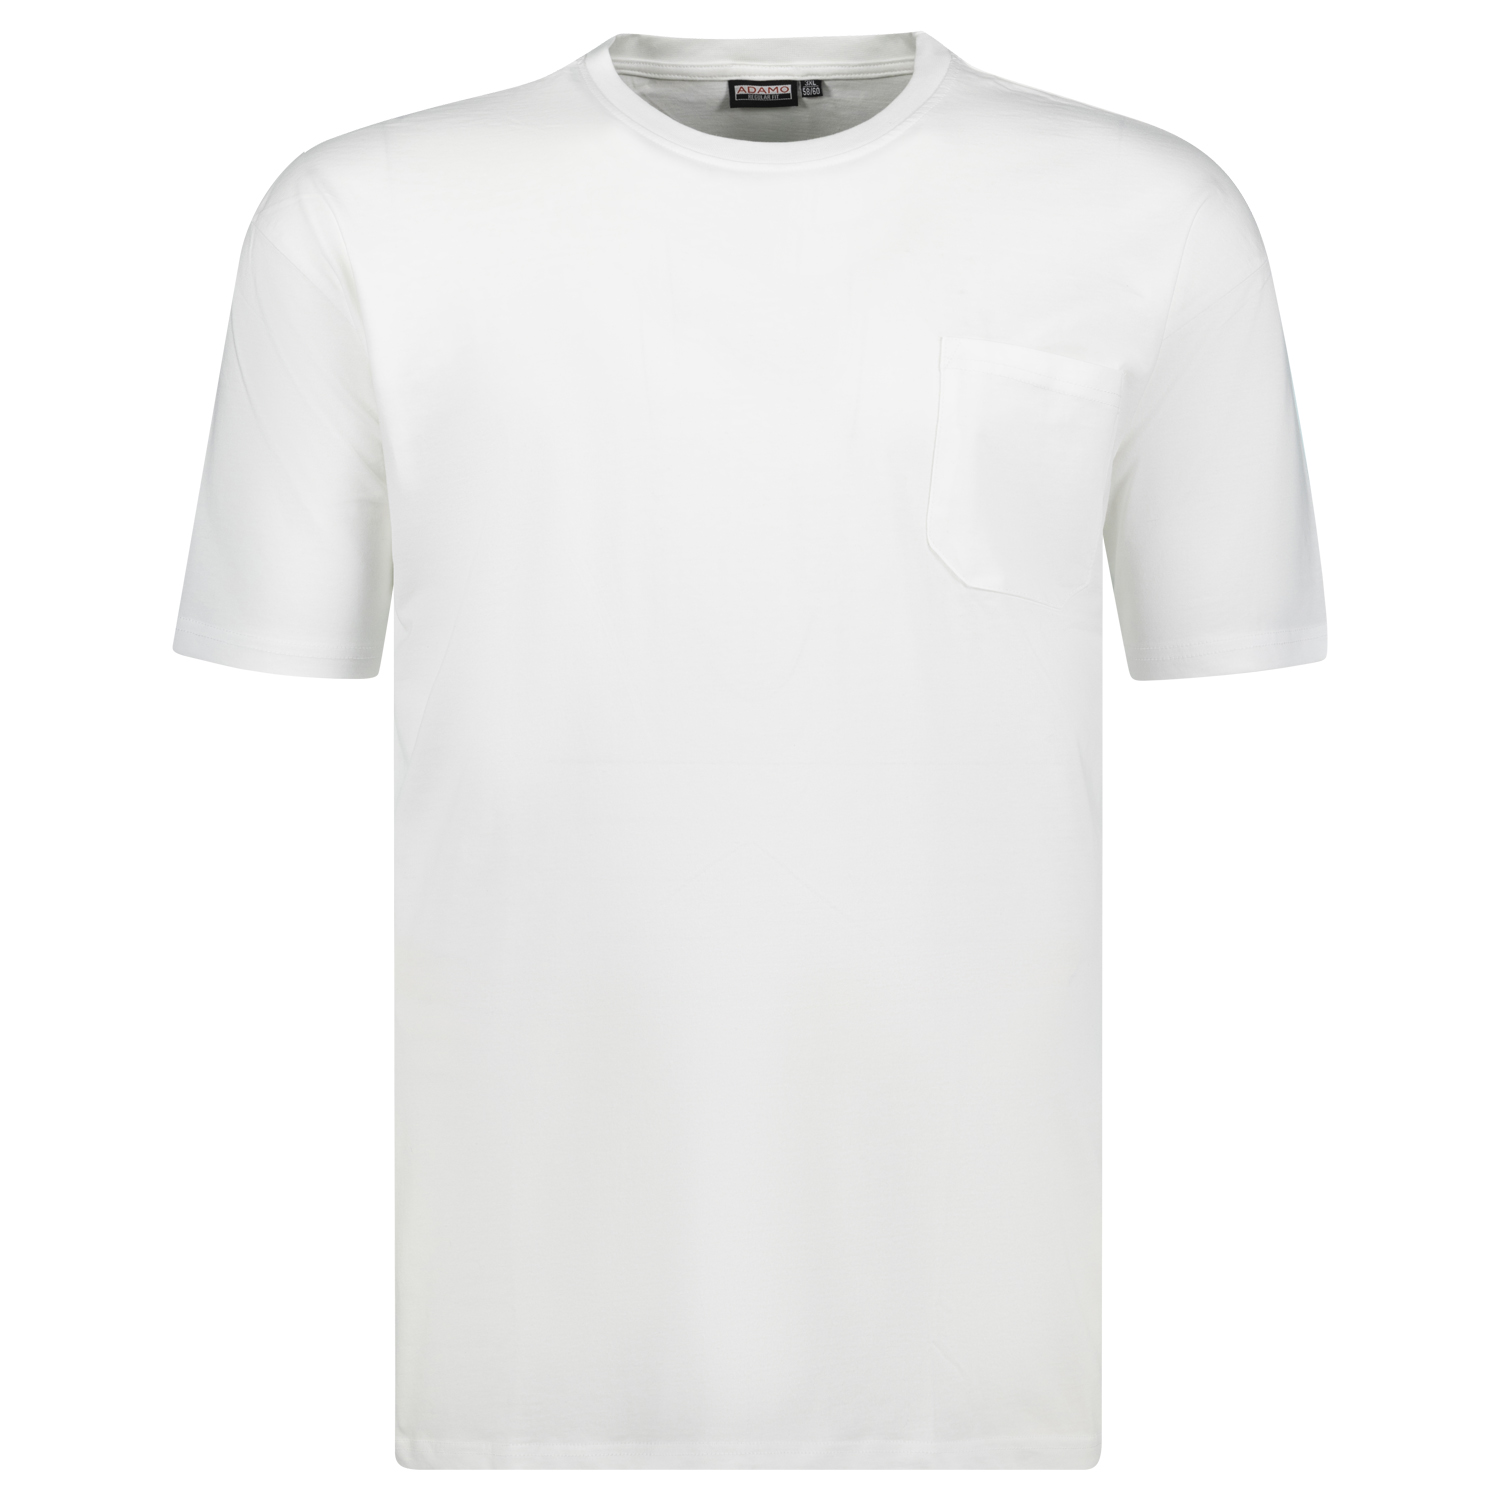 T-shirts série KODY by ADAMO jusqu'à la grande taille 10XL - couleur: blanche